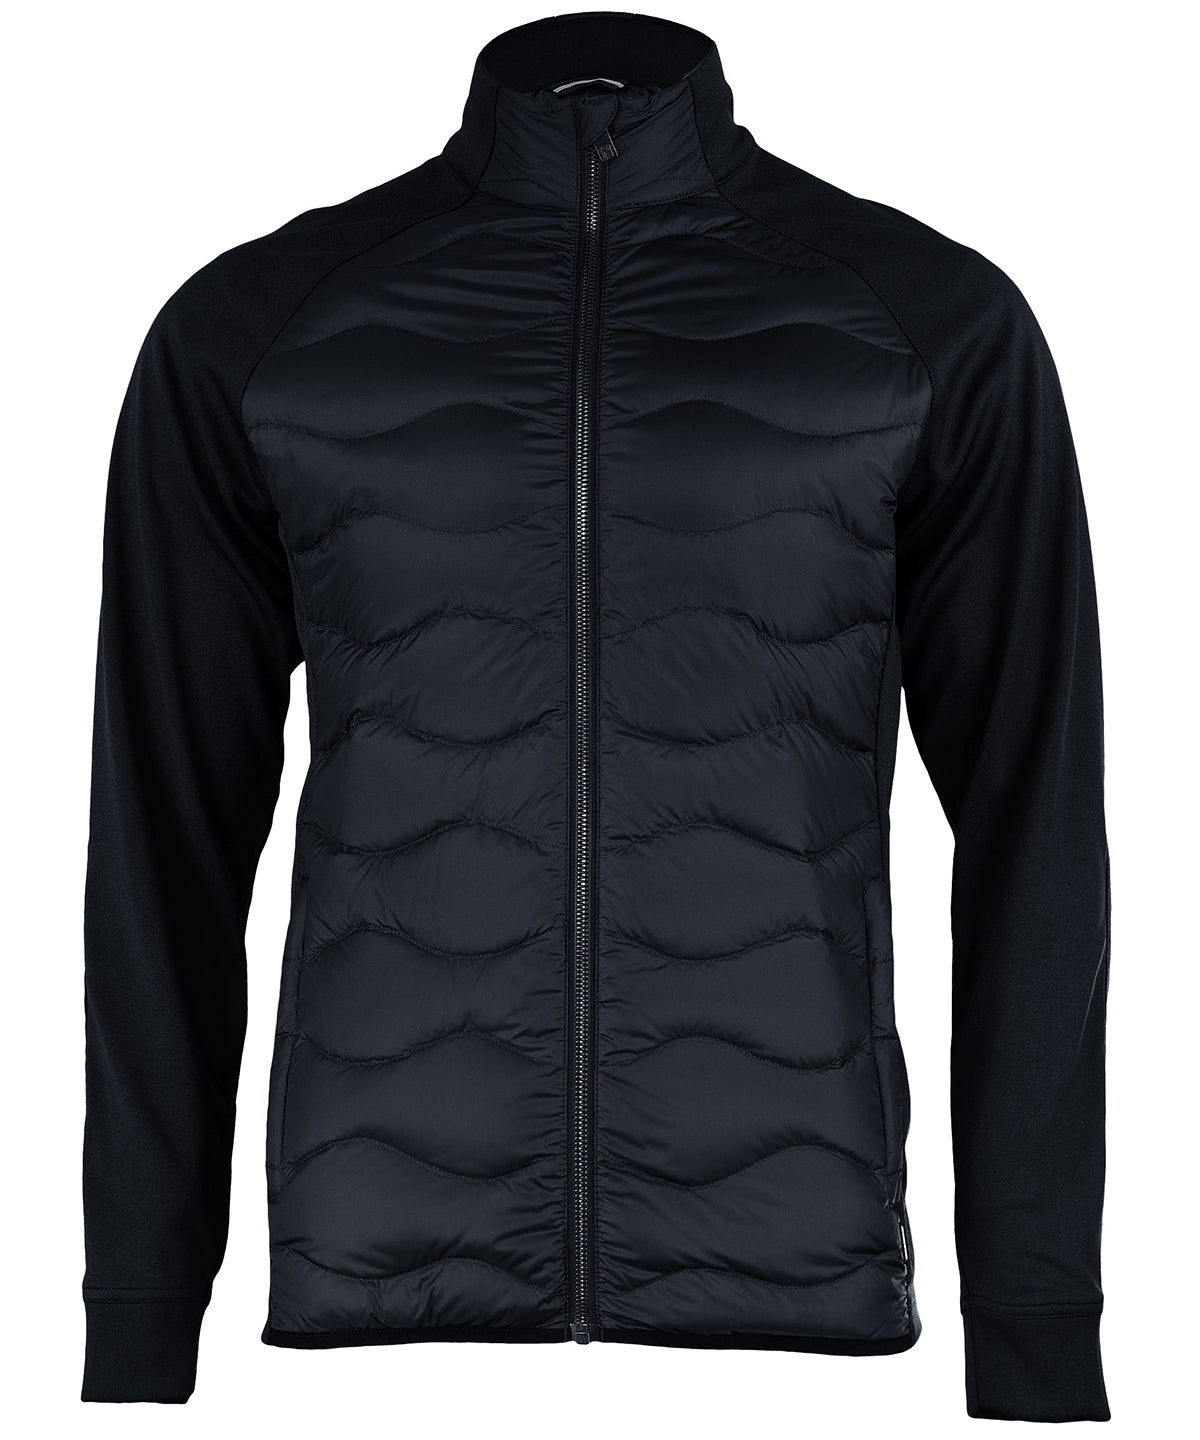 Nimbus Stillwater – premium hybrid down jacket